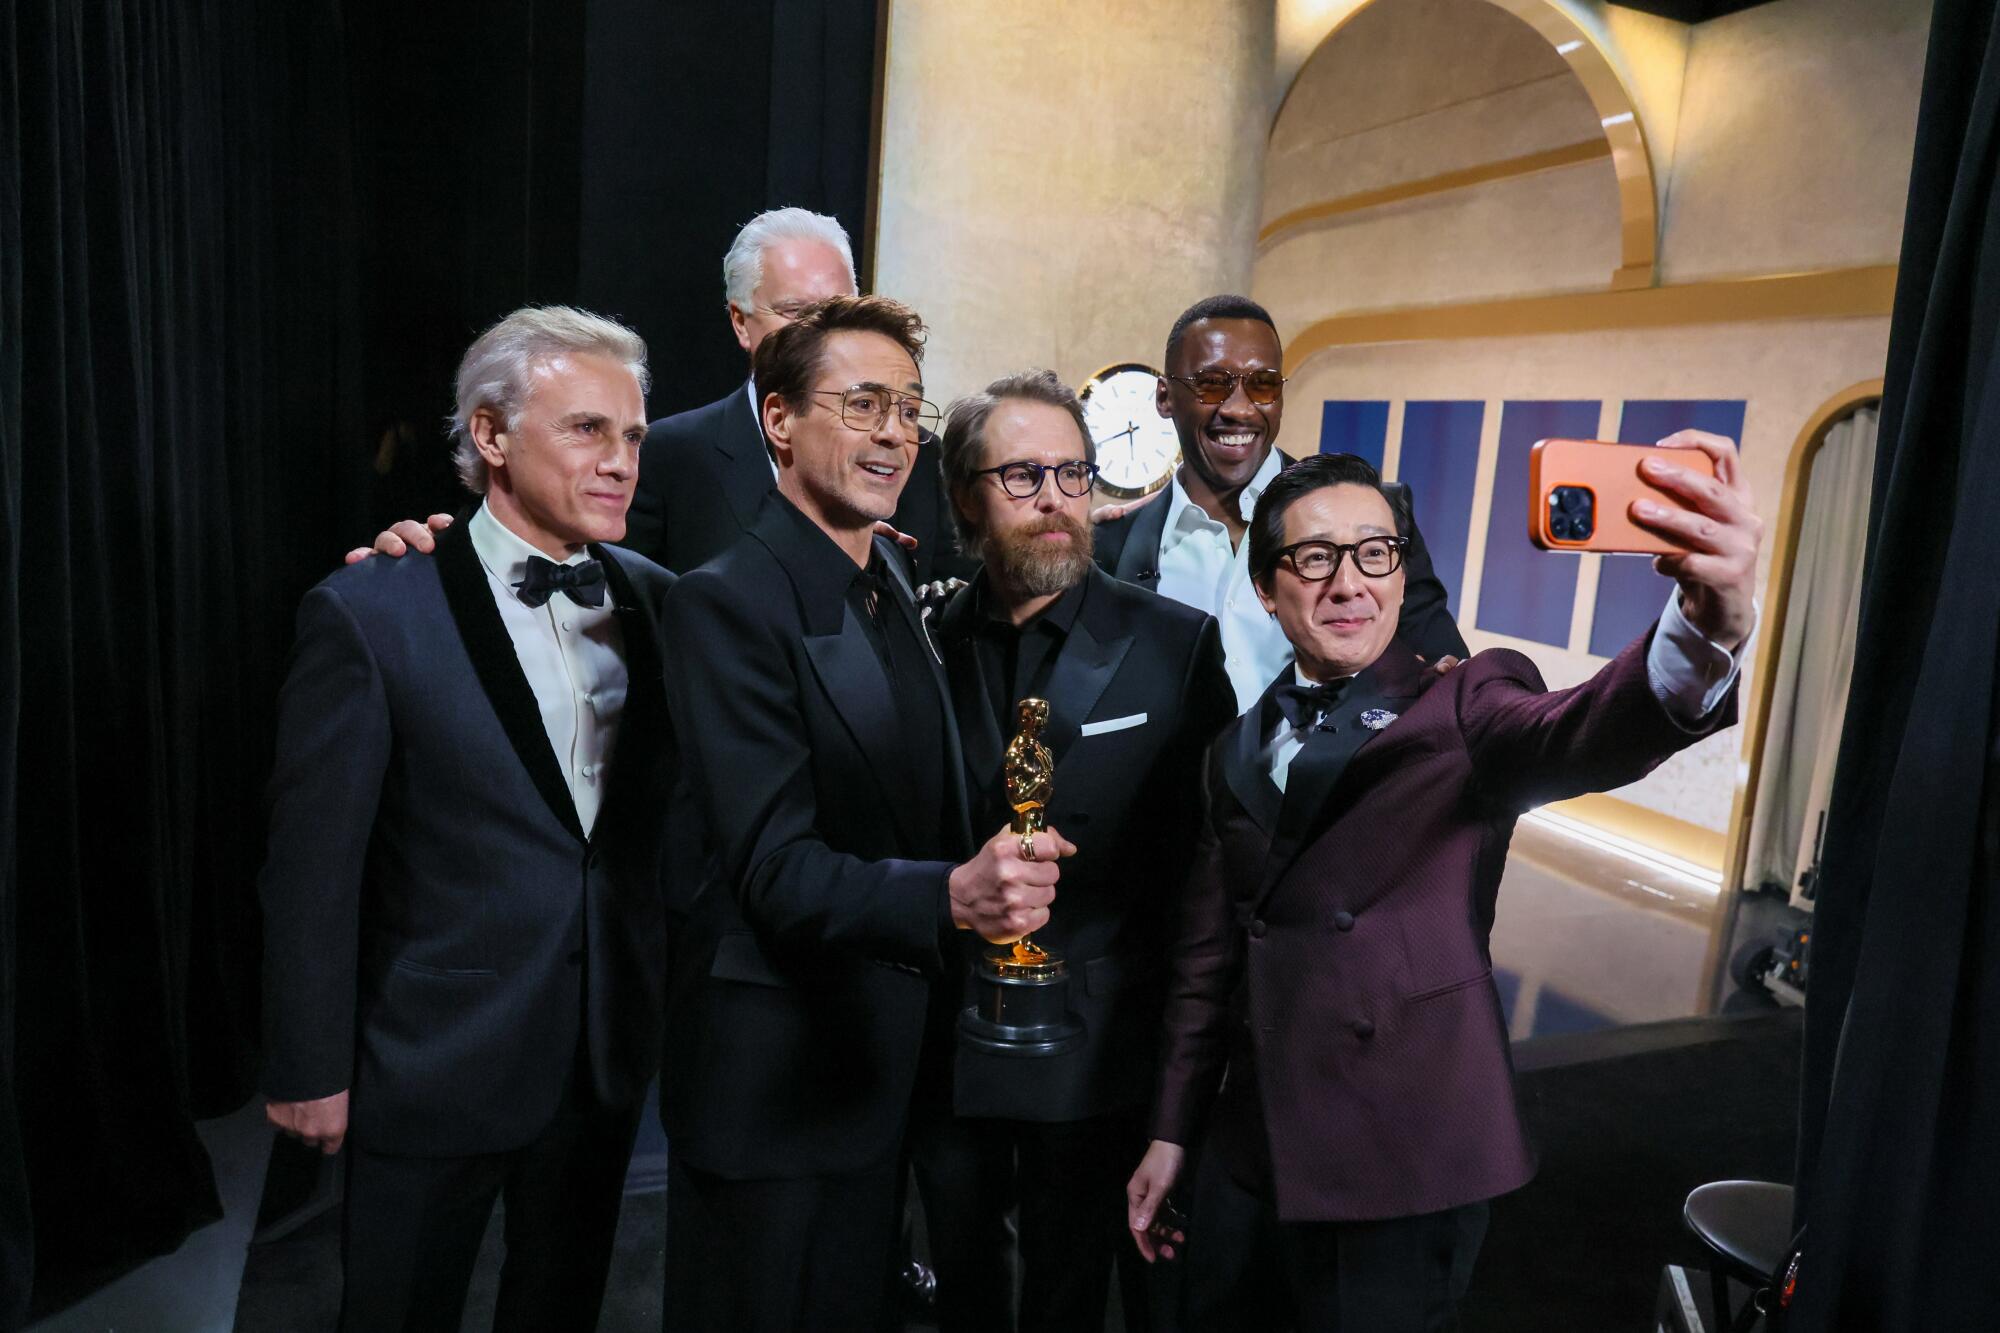 Nebendarsteller-Gewinner Robert Downey Jr. umgeben von Moderatoren hinter der Bühne während der 96. Oscar-Verleihung.